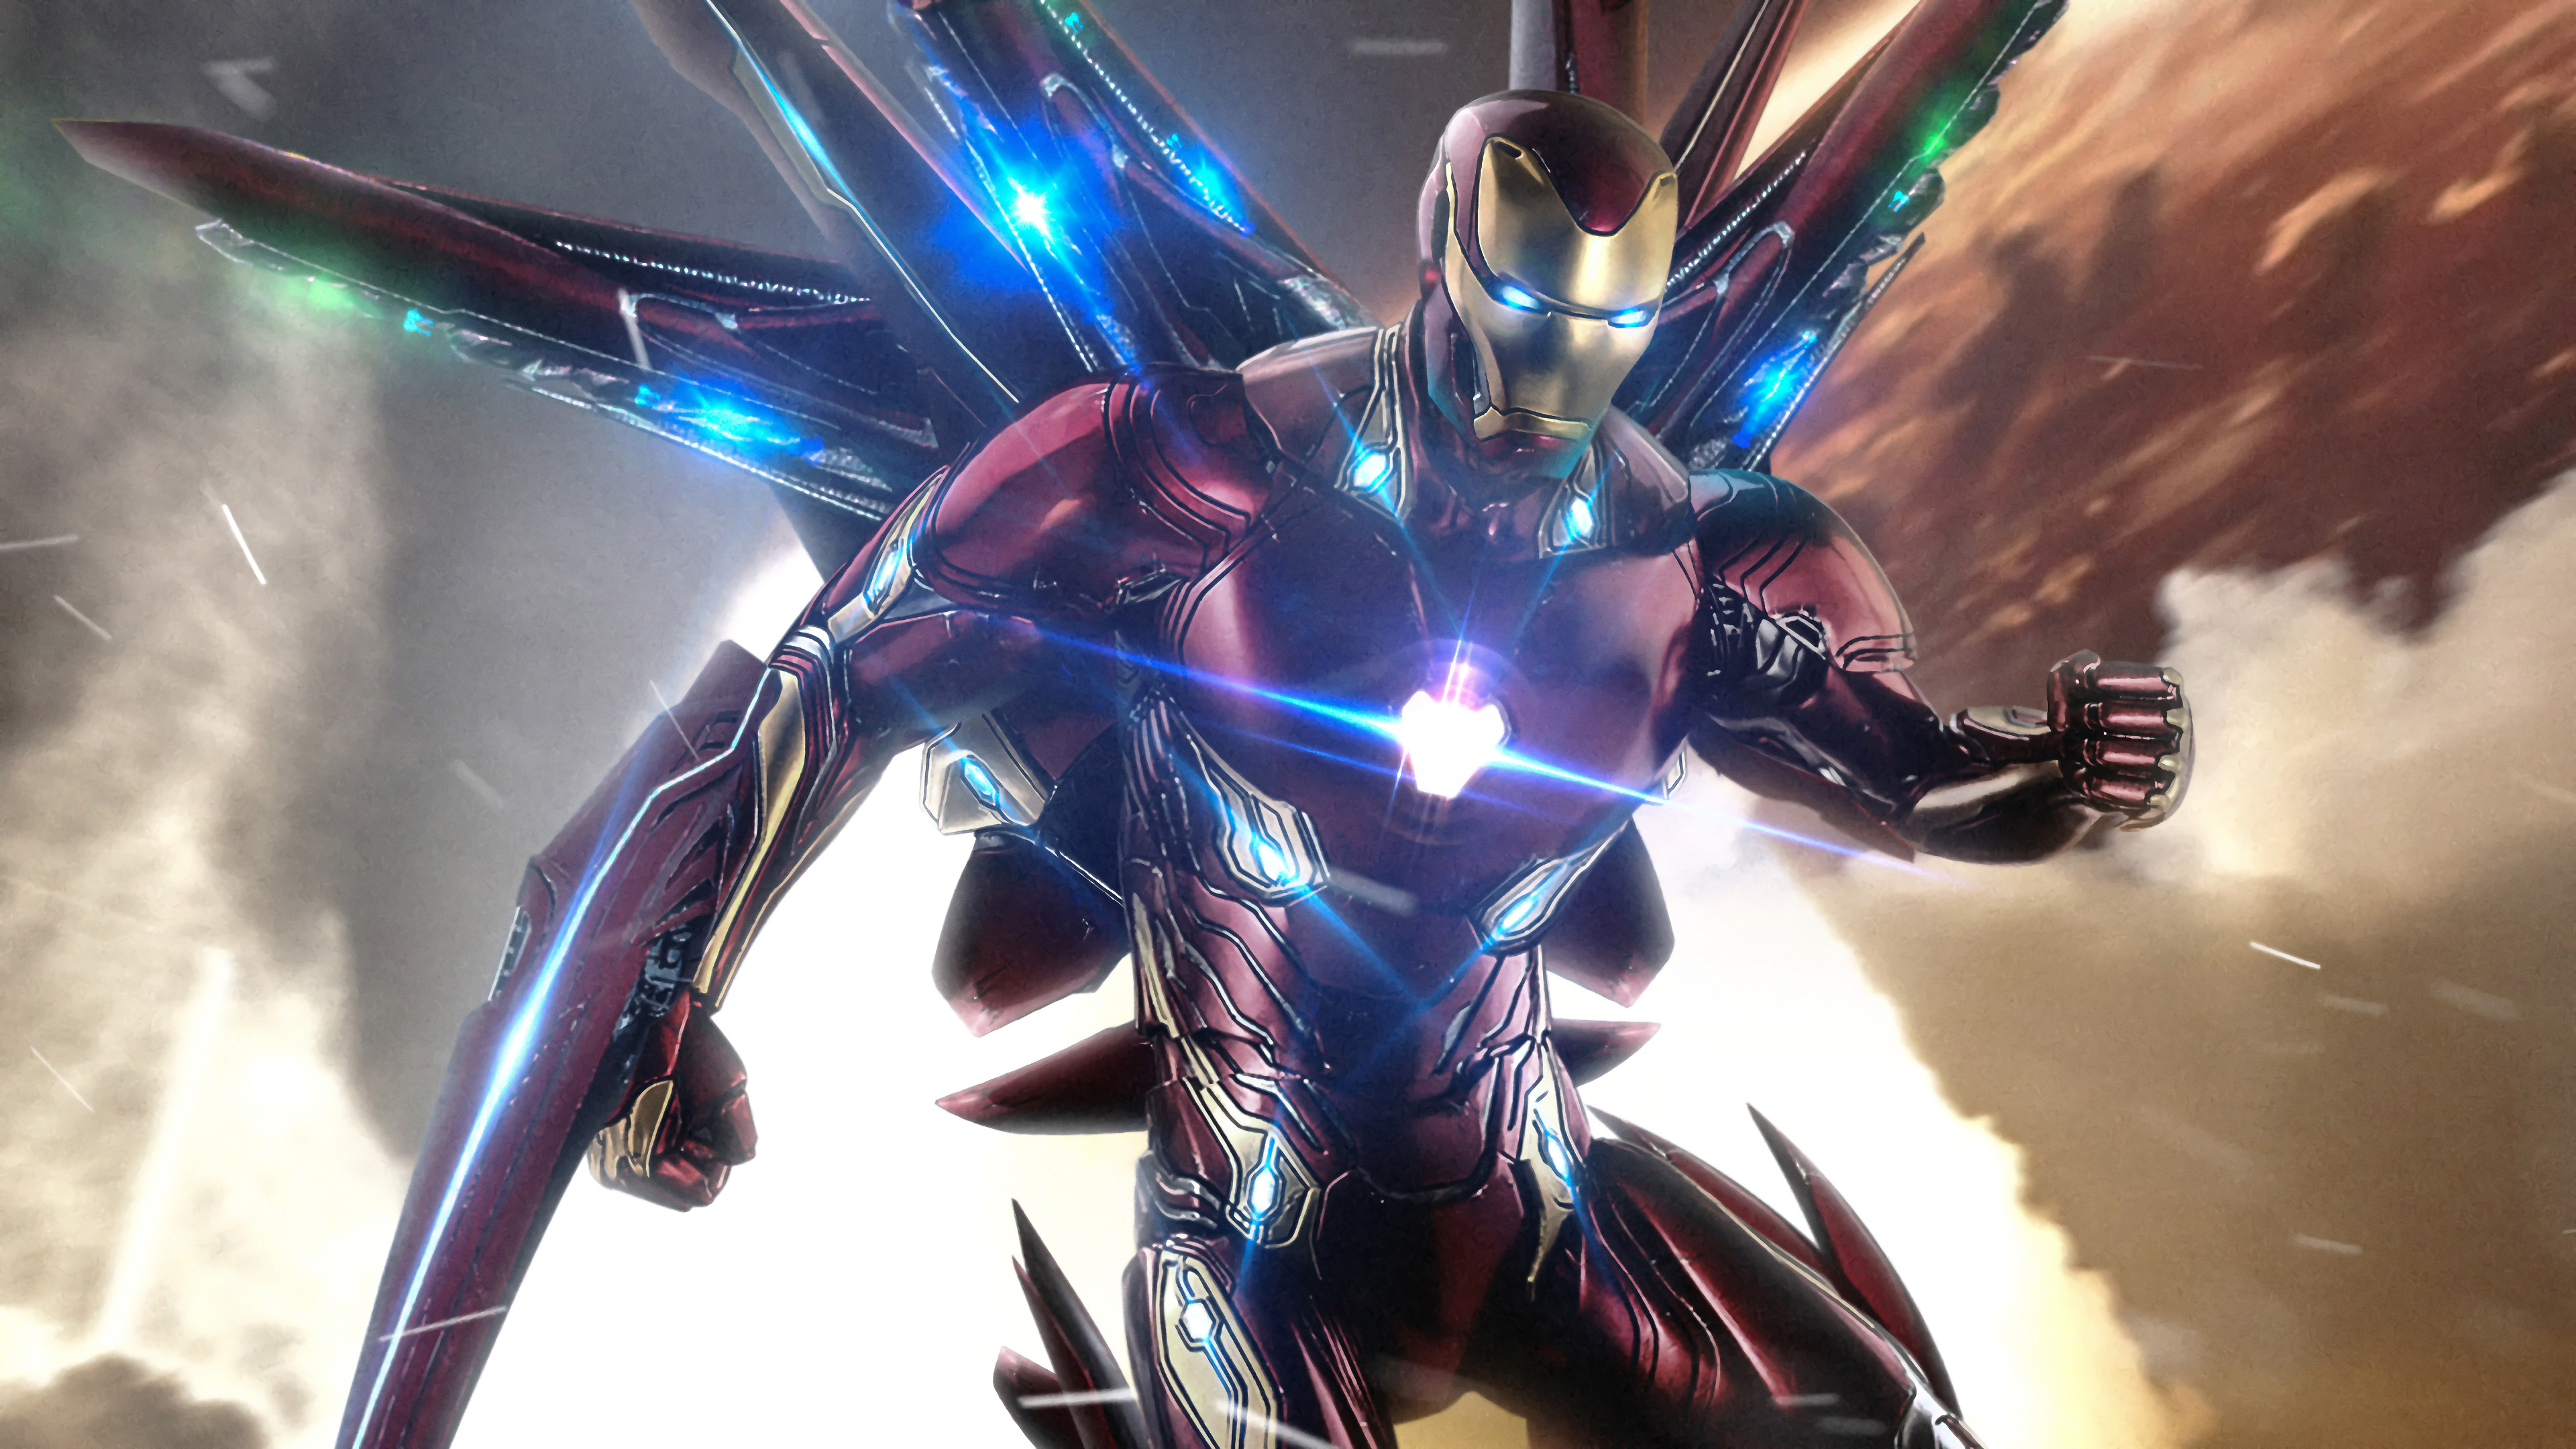 Iron Man Avengers Endgame 4K Wallpaper 35